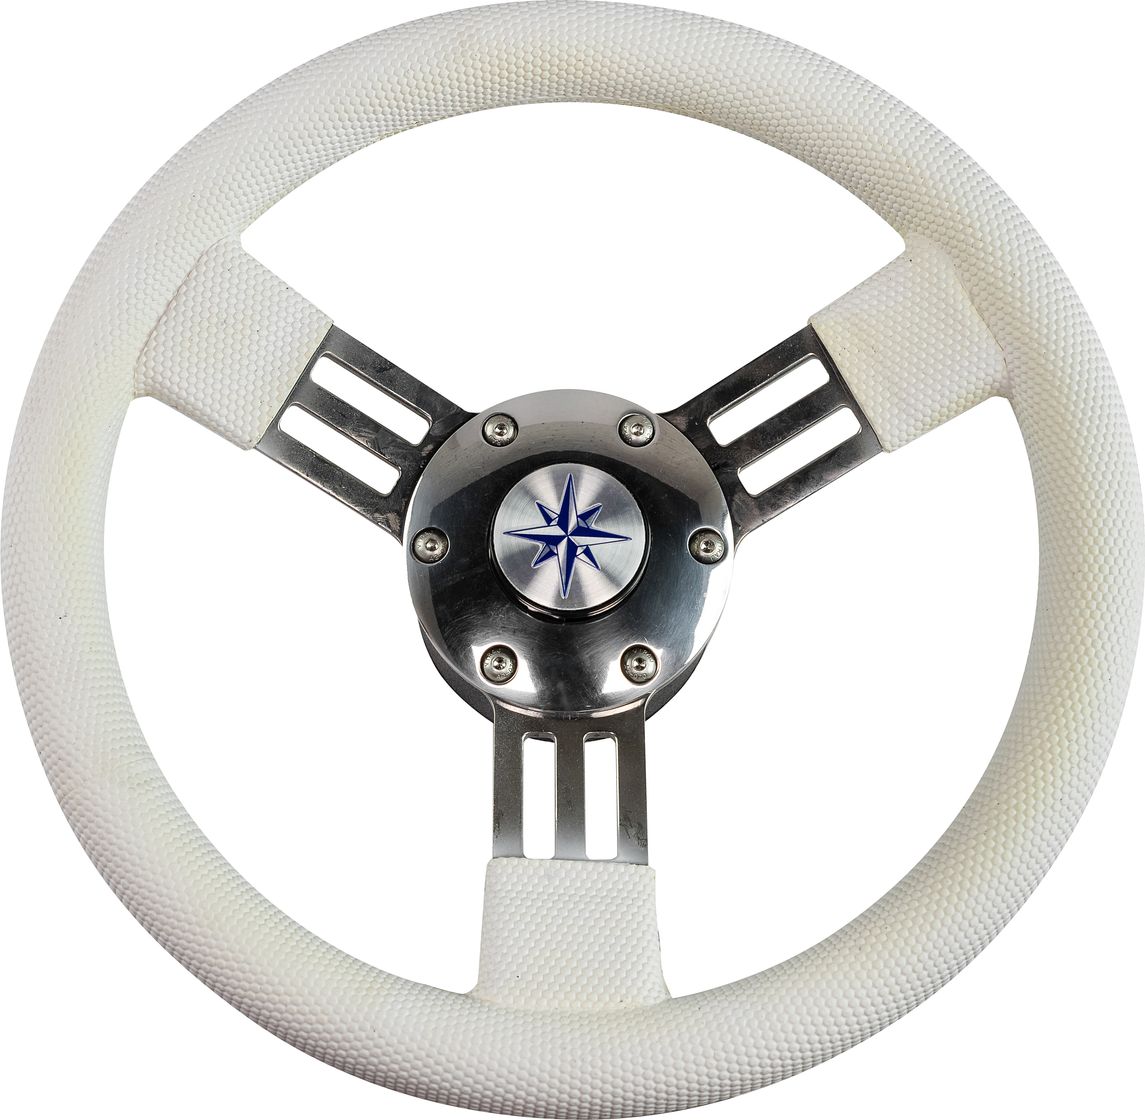 Рулевое колесо PEGASO обод белый, спицы серебряные д. 300 мм VN13327-08 рулевое колесо barracuda обод спицы серебряные д 350 мм vn135002 01